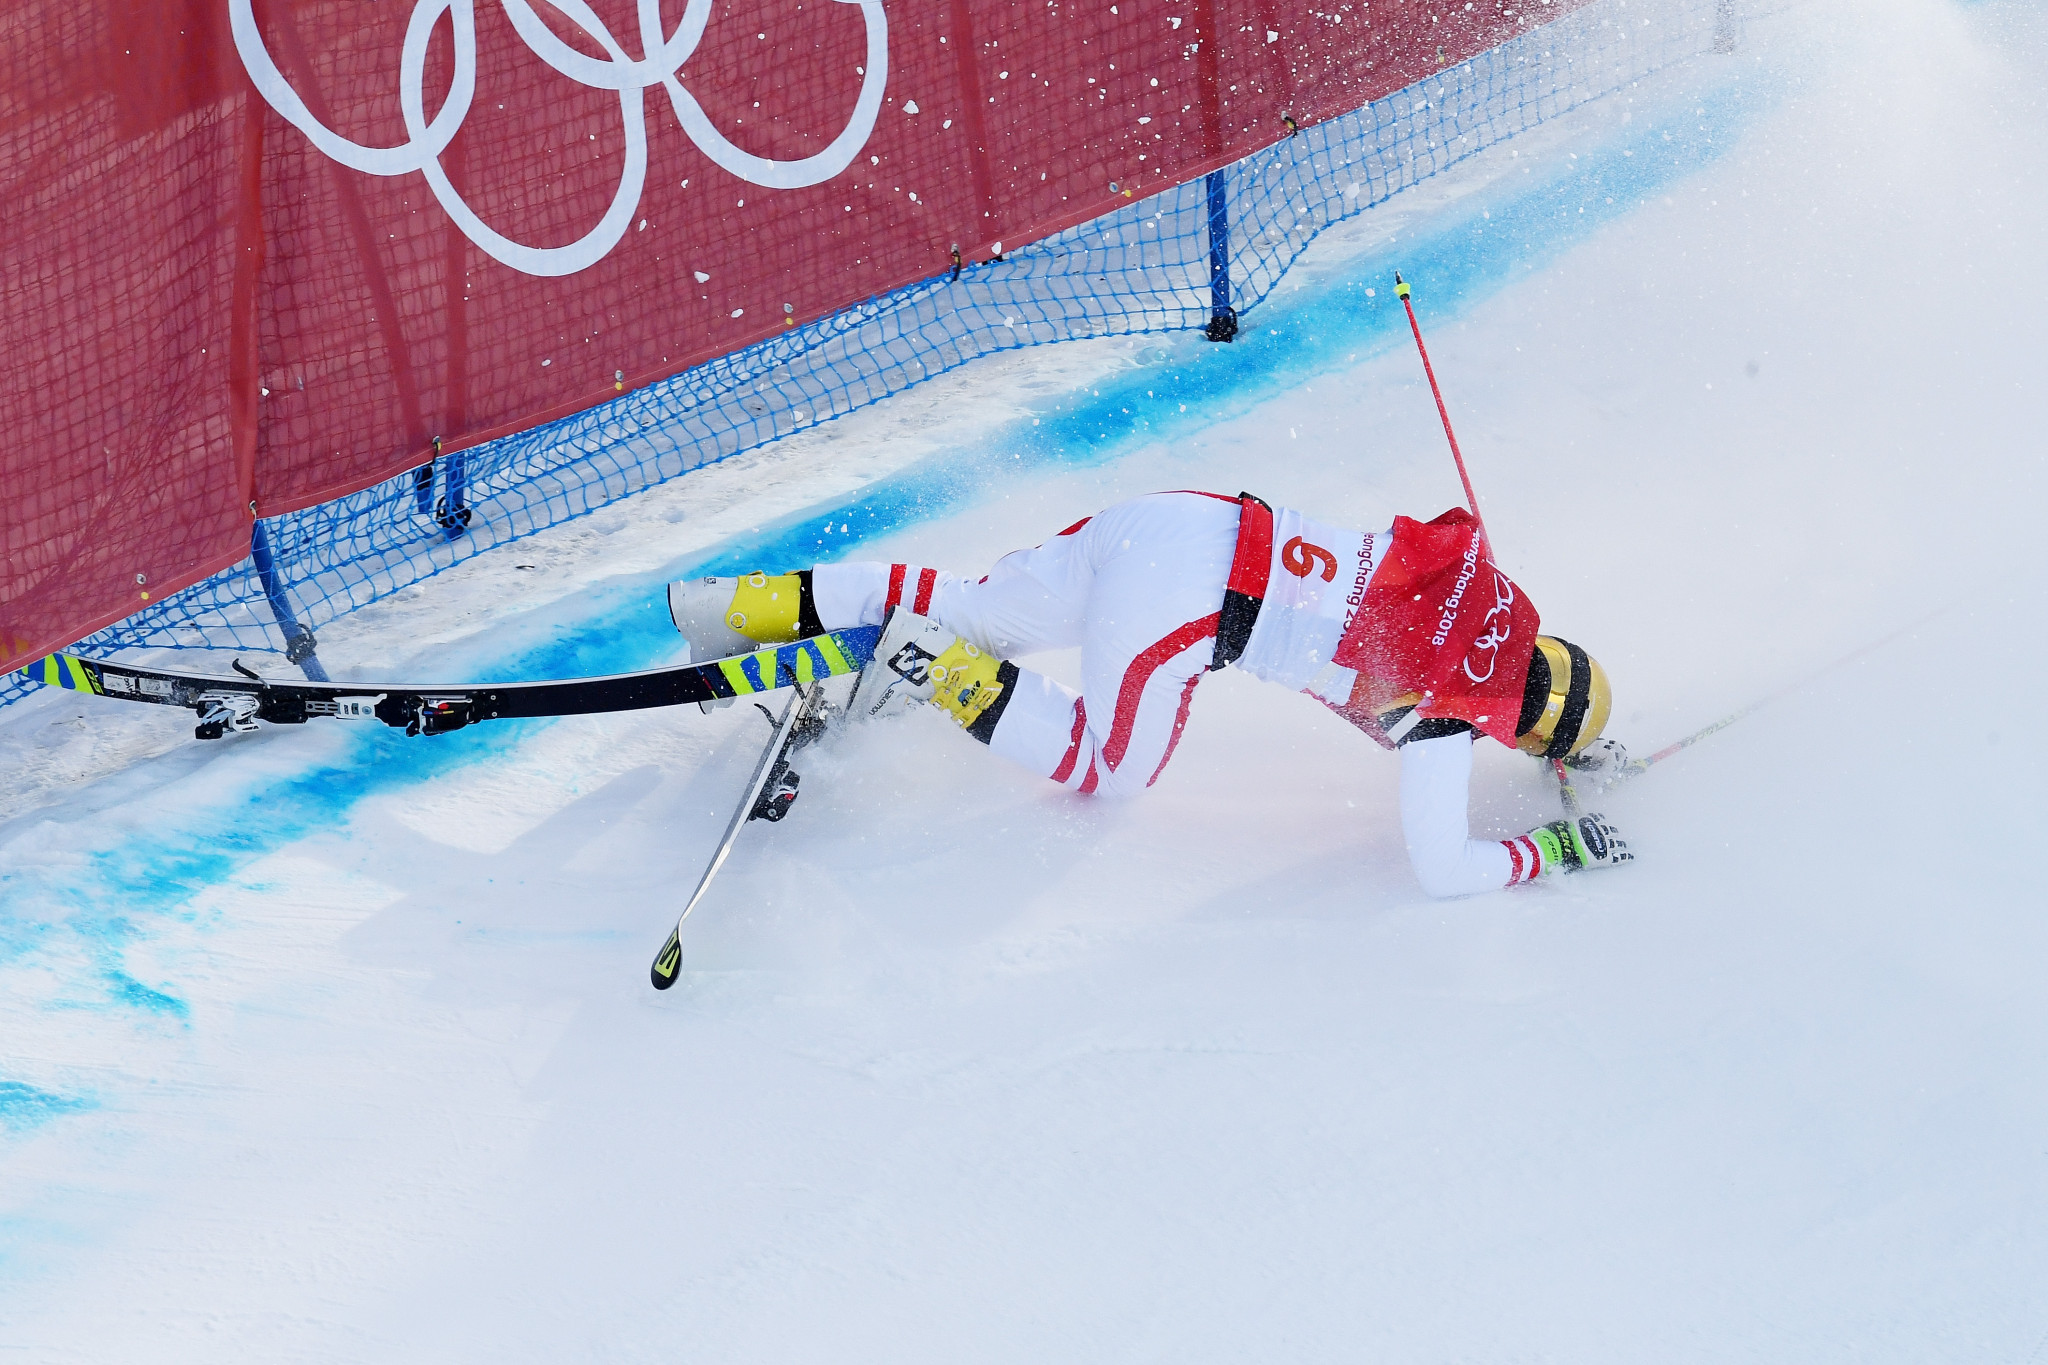 Austrian ski cross star retires after serious crash at Pyeongchang 2018